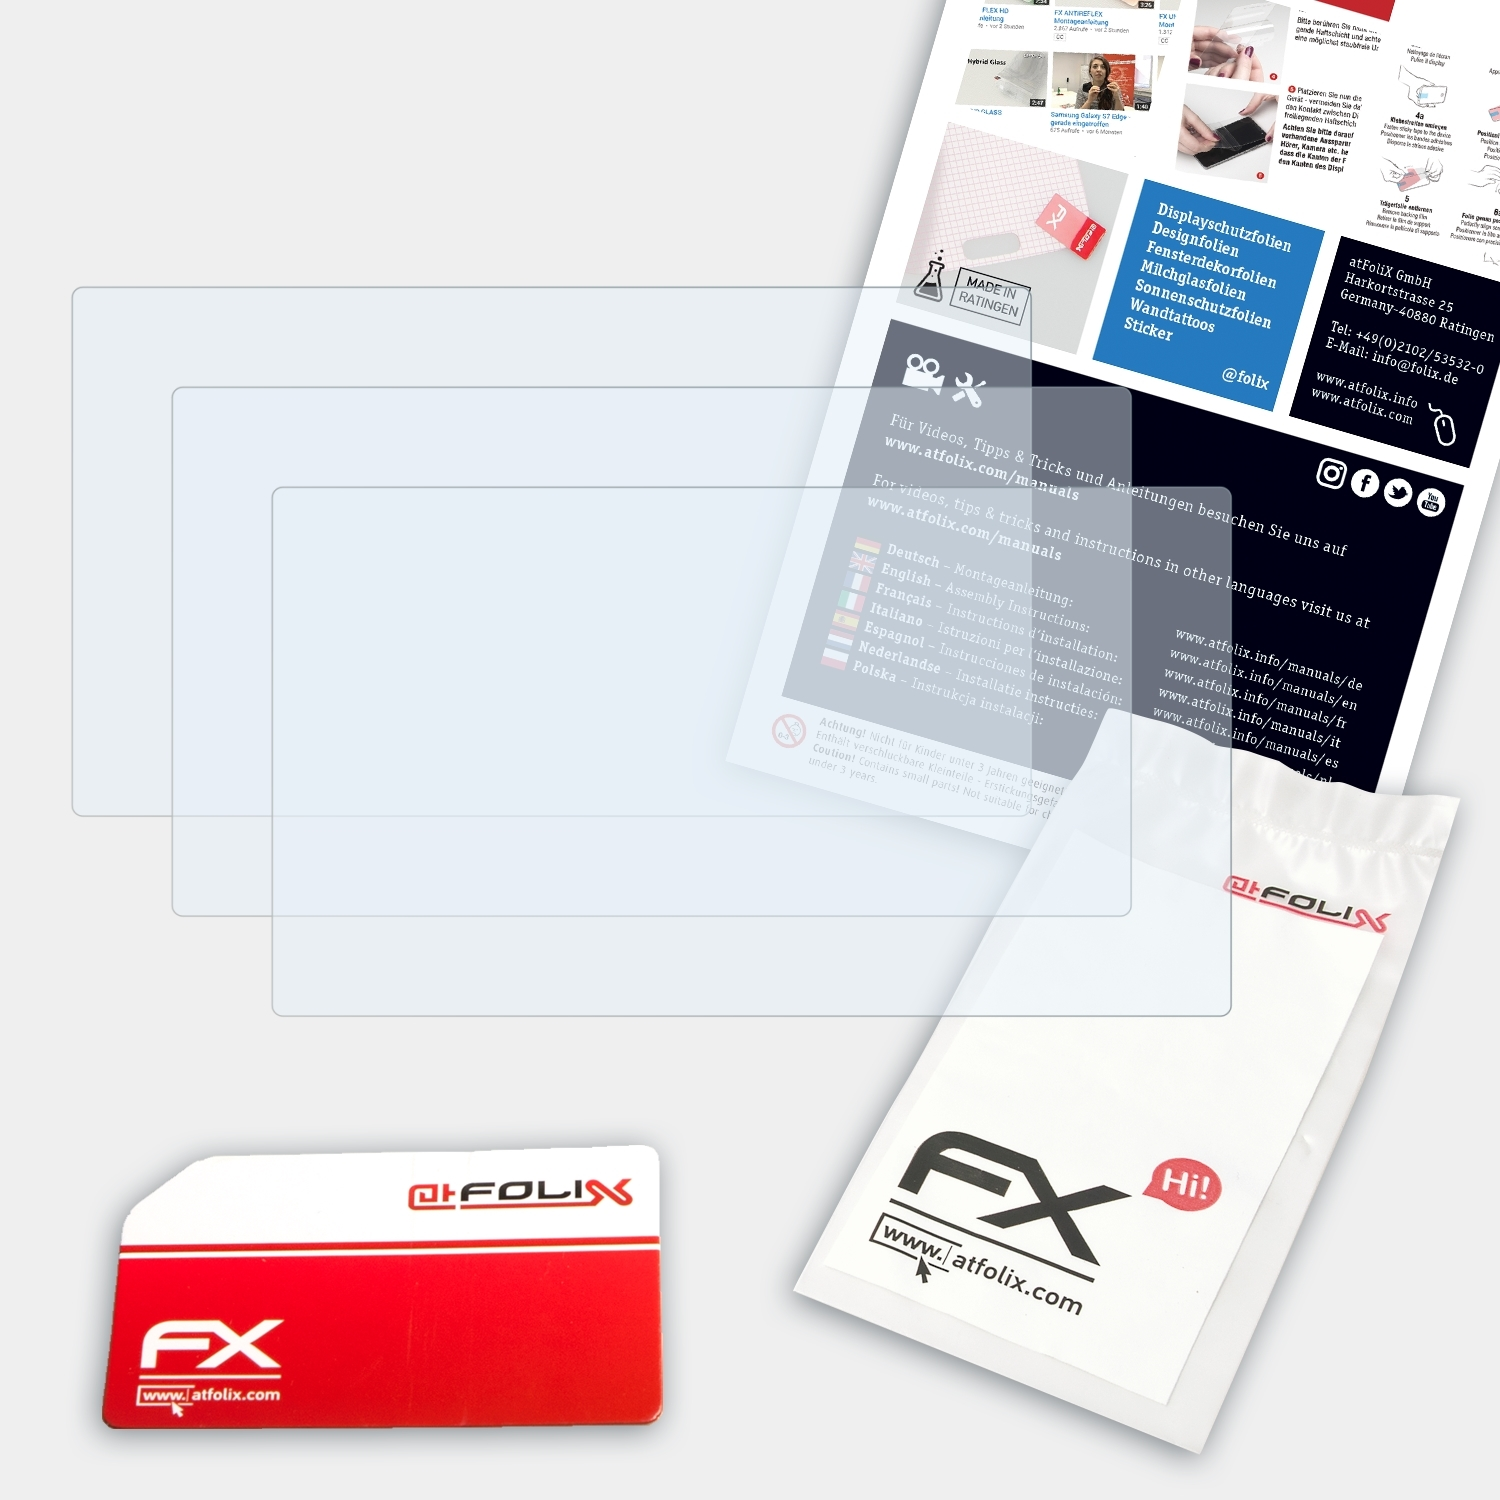 ATFOLIX 3x FX-Clear DJS-1000) Pioneer Displayschutz(für